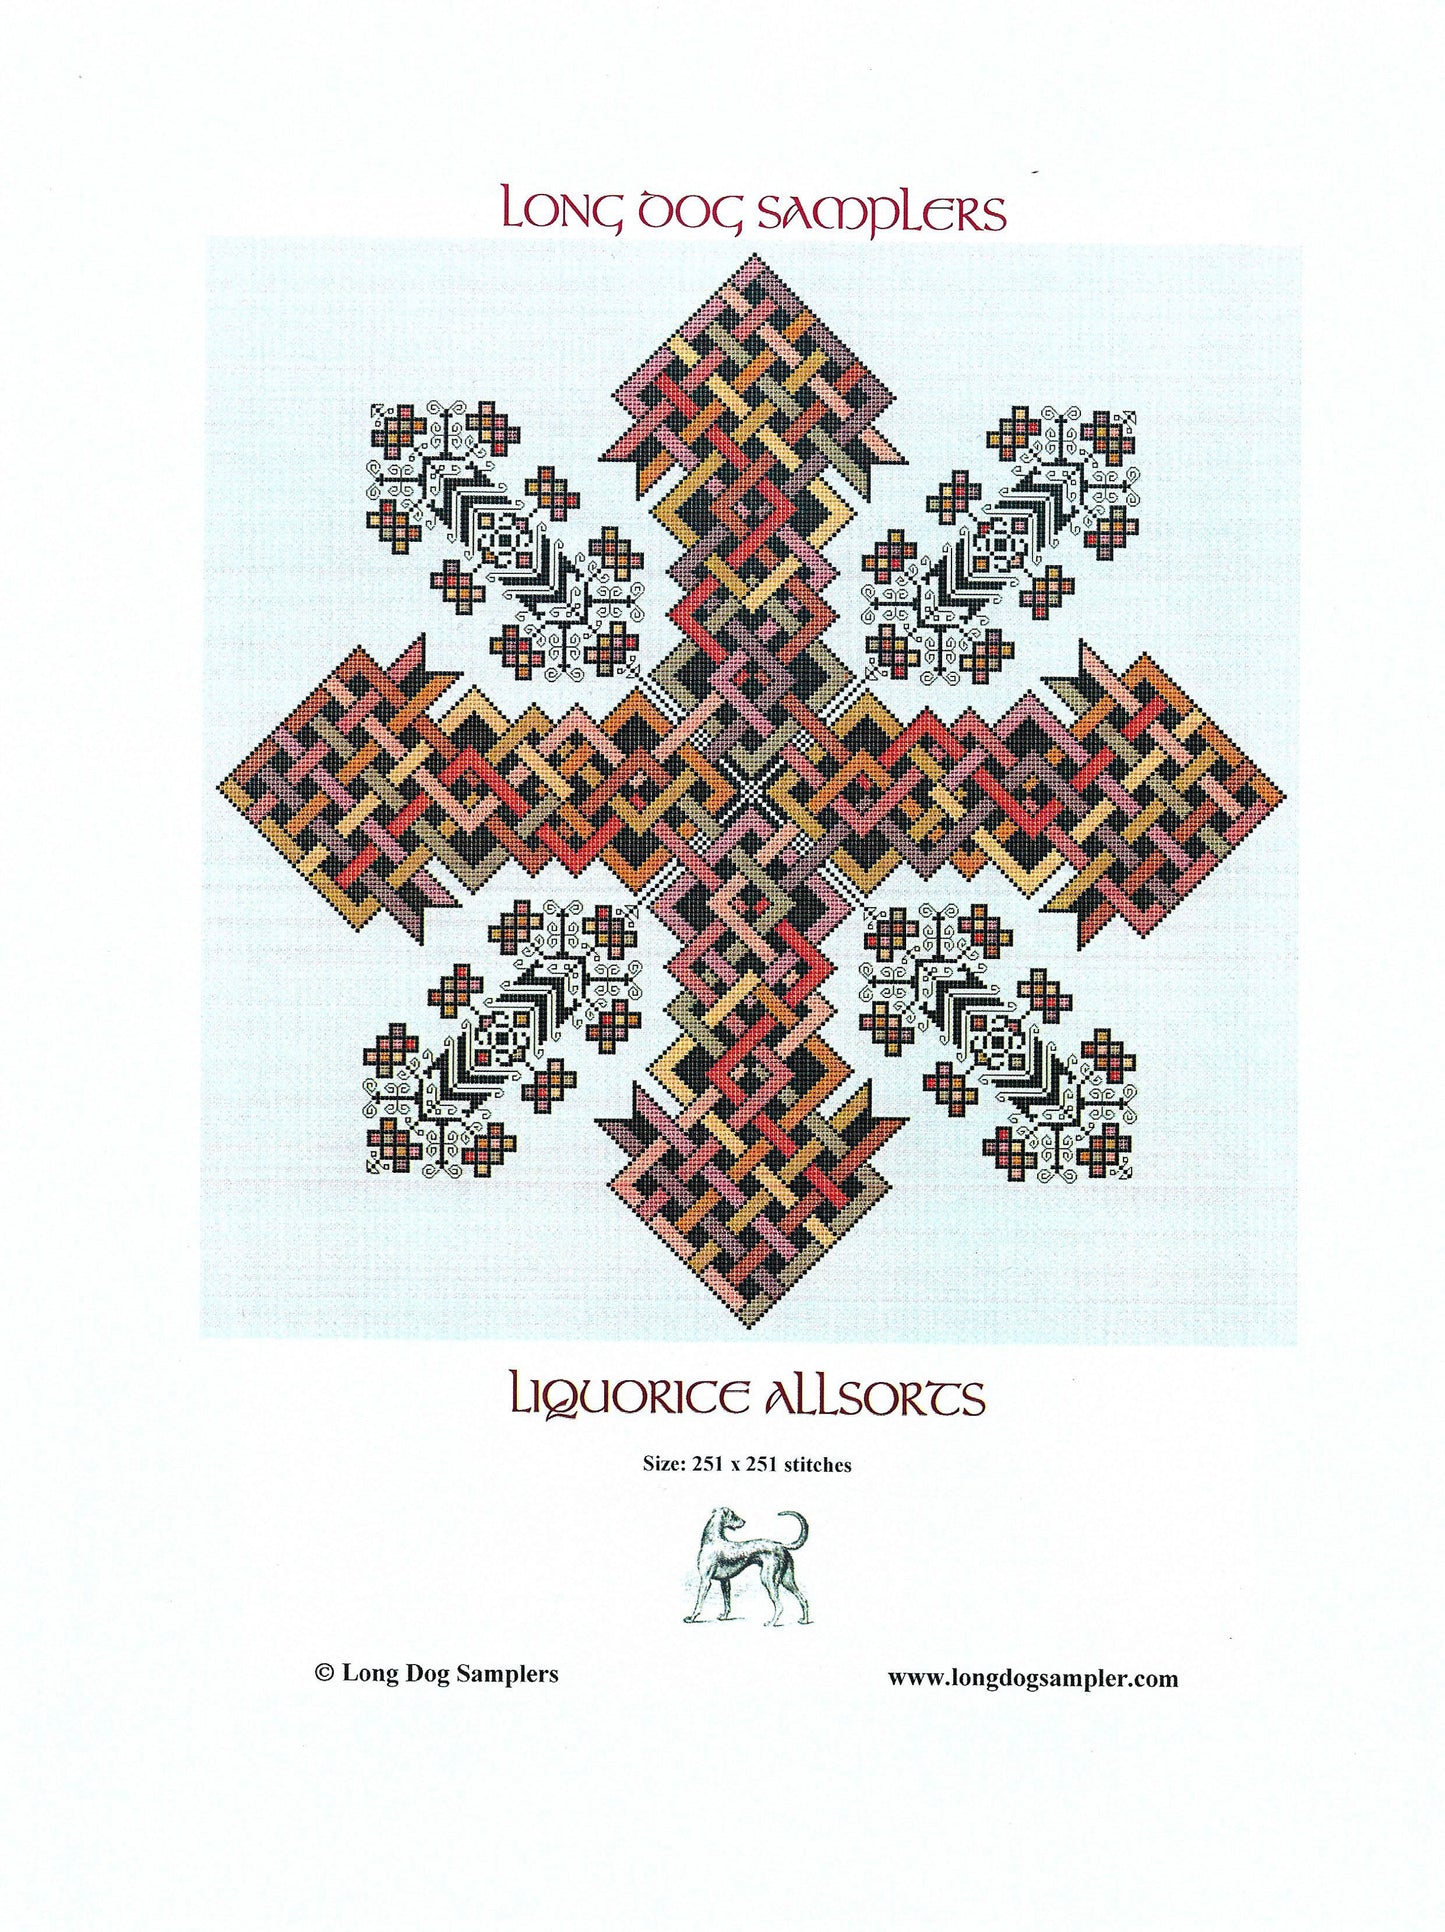 Long Dog Sampler - Liquorice Allsorts